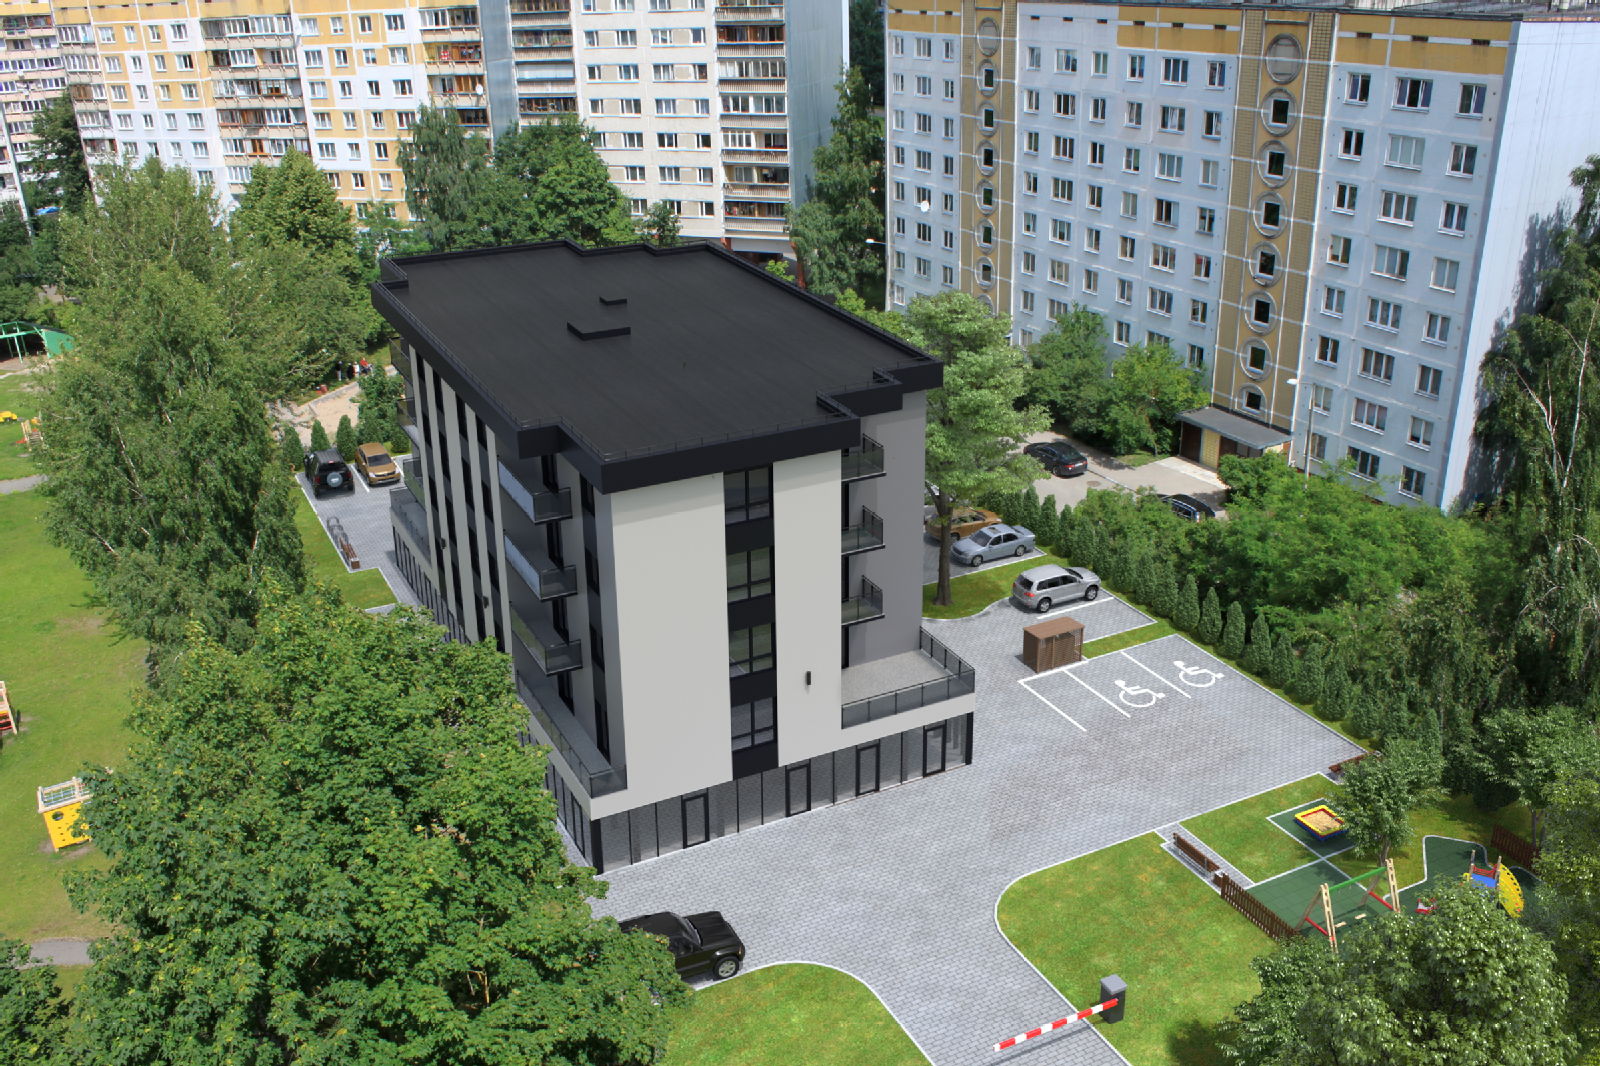 Turpinās dzīvokļu rezervēšana jaunajā projektā Pļavniekos – Tīnūžu 1A - Nekustamo īpašumu ziņas - City24.lv nekustamo īpašumu sludinājumu portāls